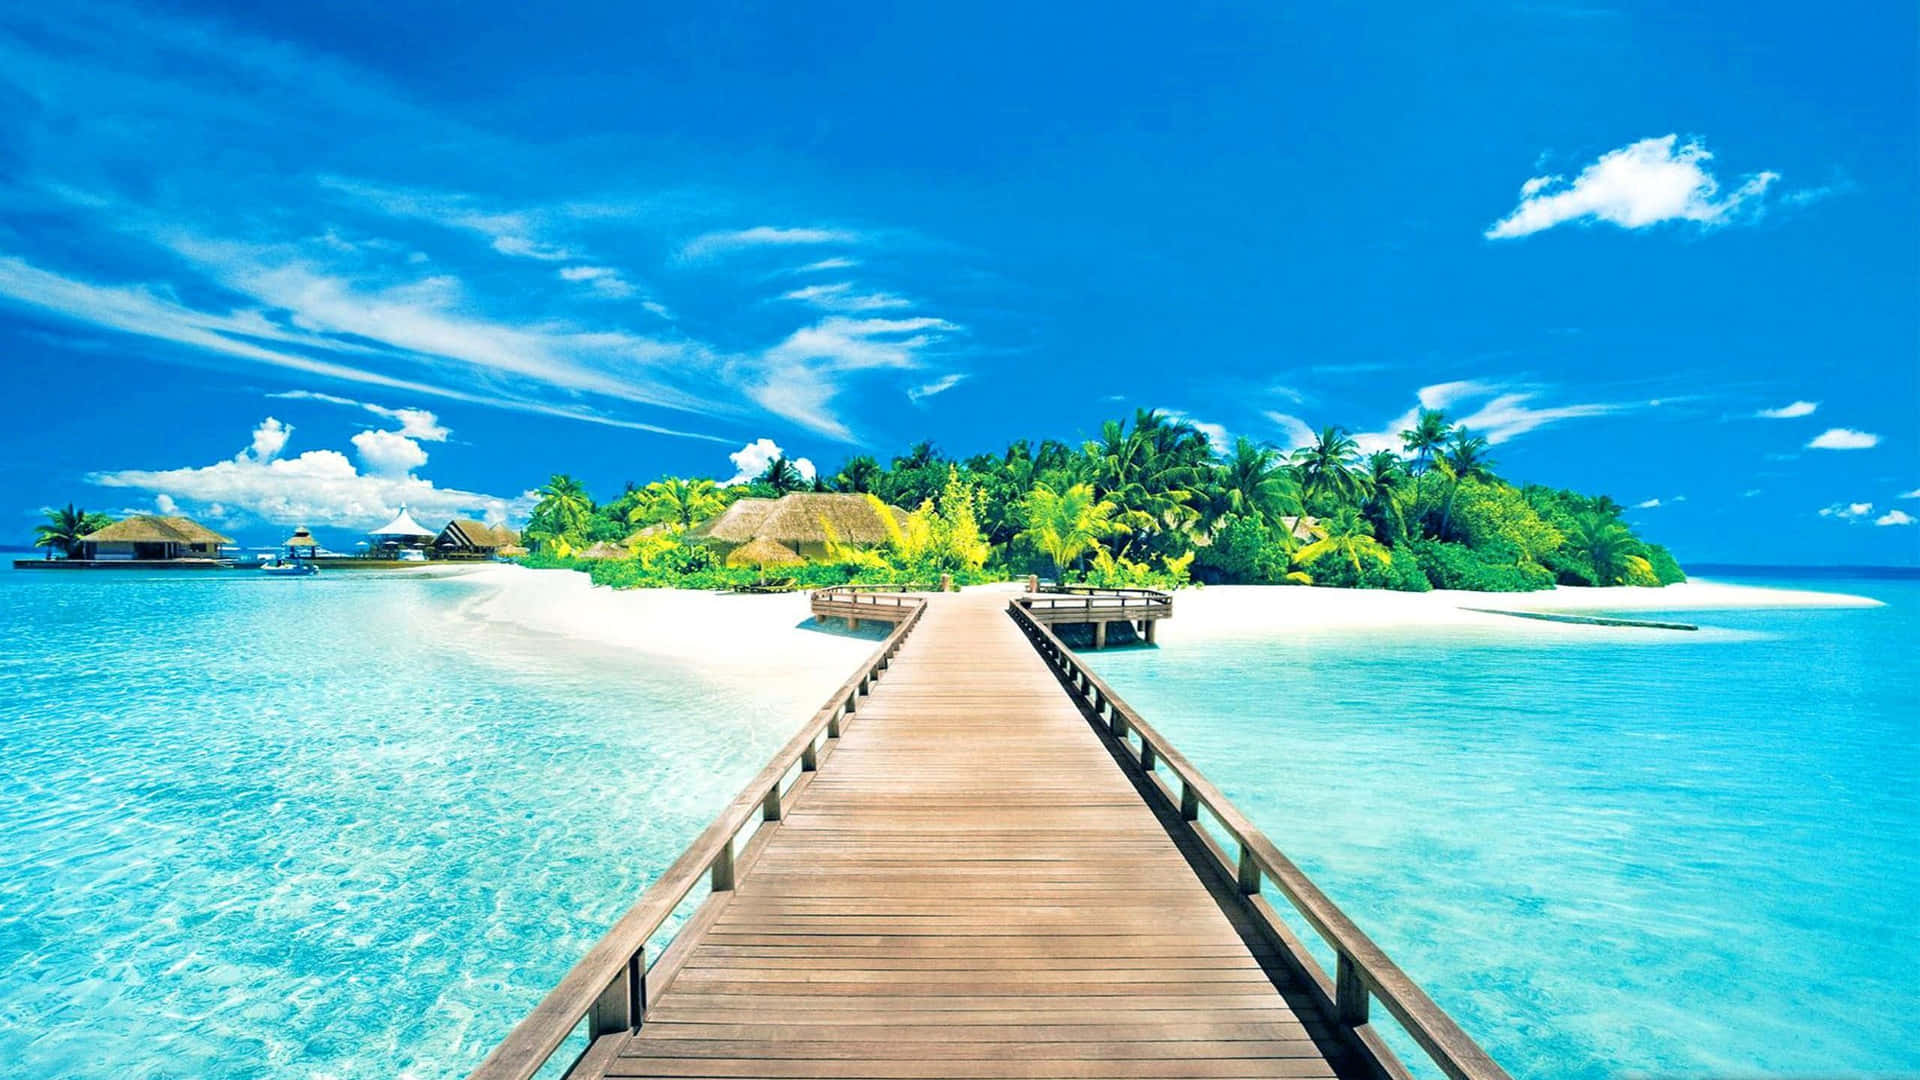 Life's a beach: enjoy a tropical vacation on an Island.